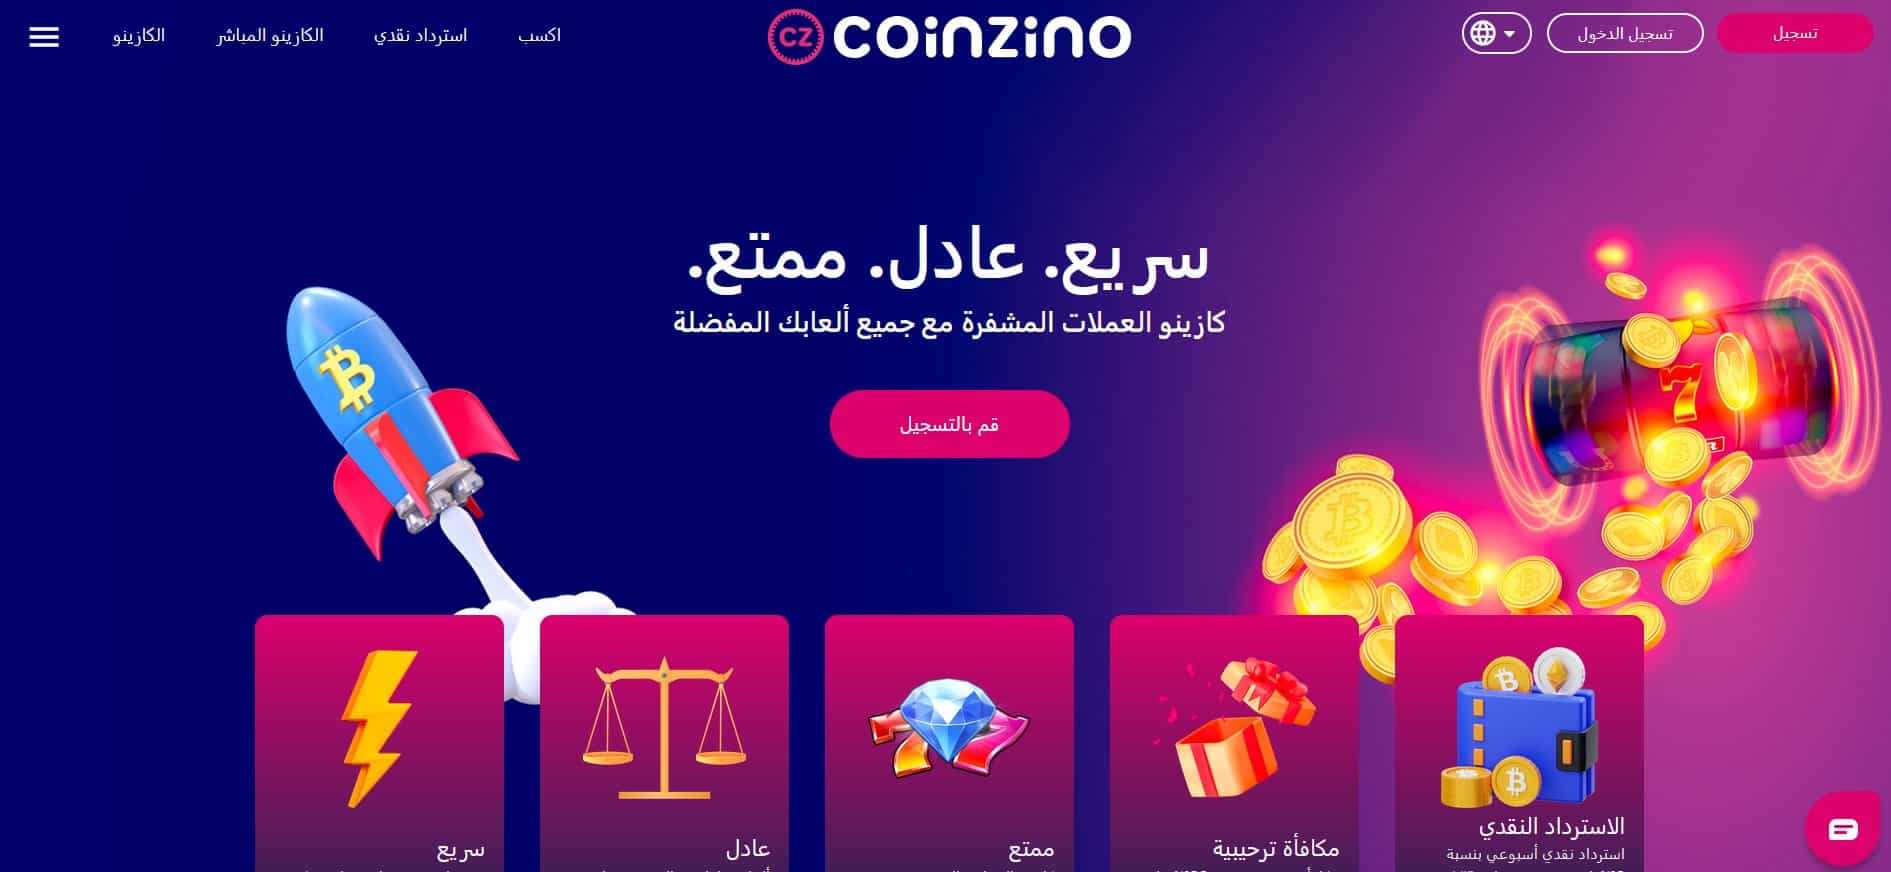 Coinzino – مكافأة بنسبة 100% وتصل إلى 500 دولار